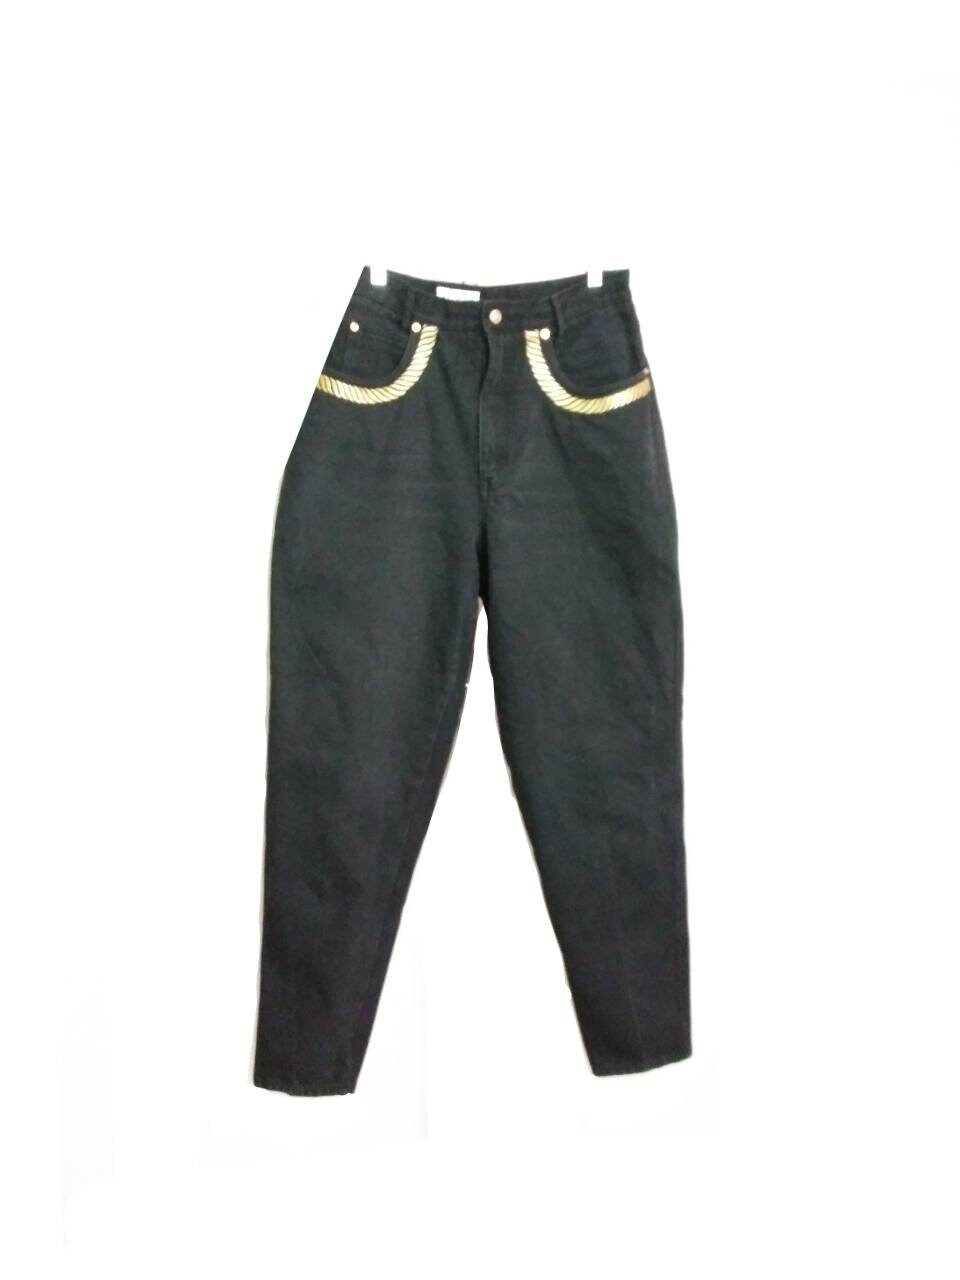 Vintage Venezia Jeans Lane Bryant Plus Sz 18/20 Black Faux Suede Shacket  Korea 